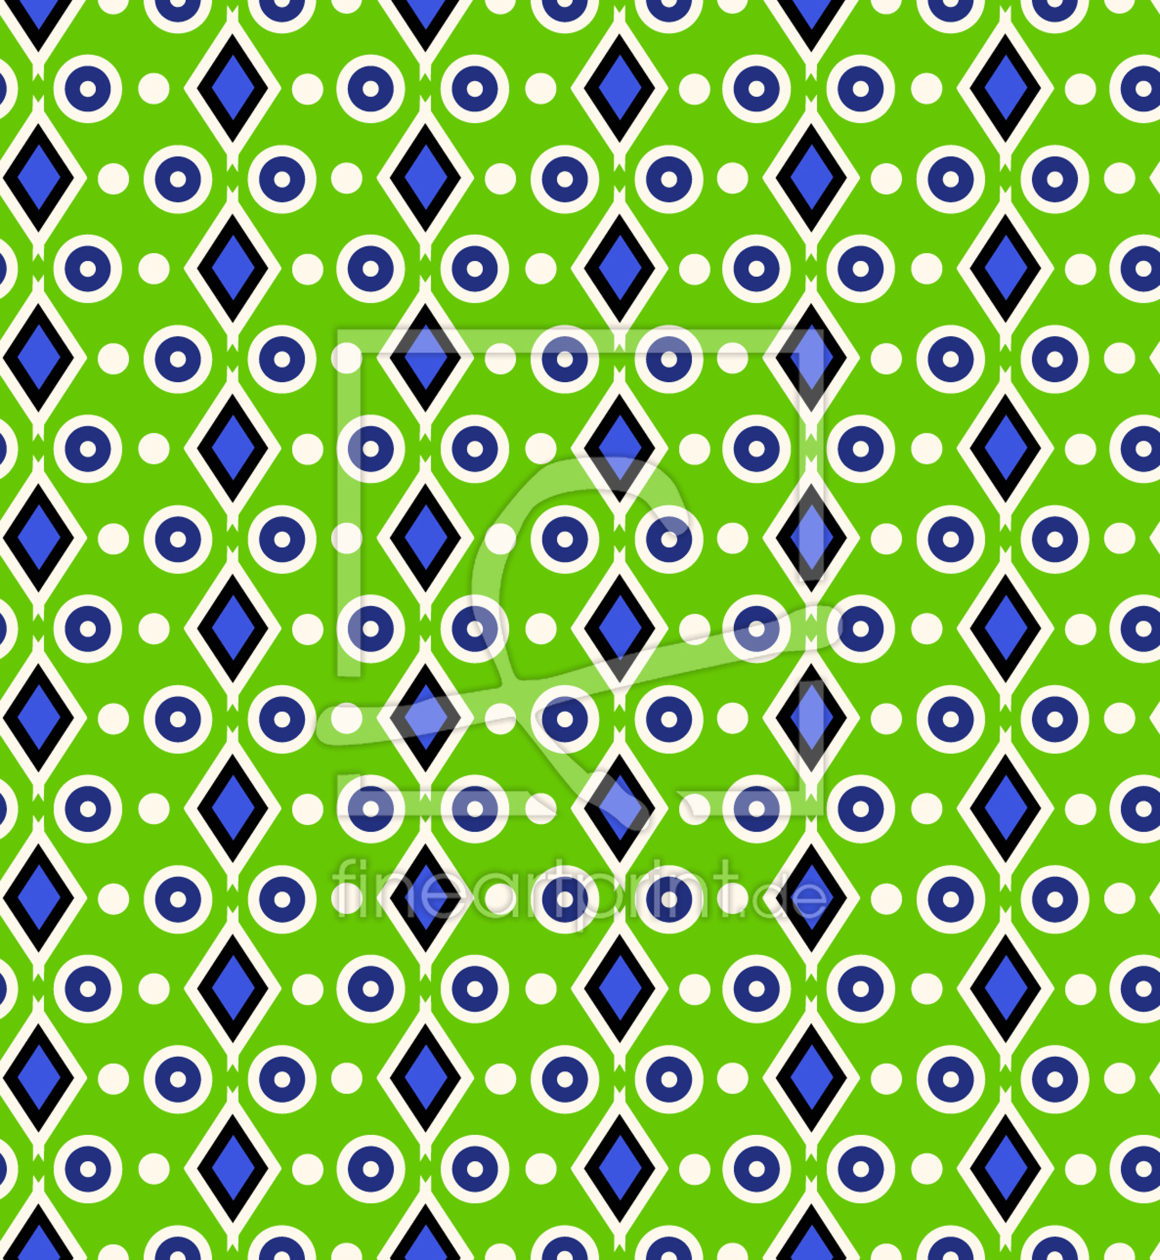 Bild-Nr.: 9001296 Formen erstellt von patterndesigns-com